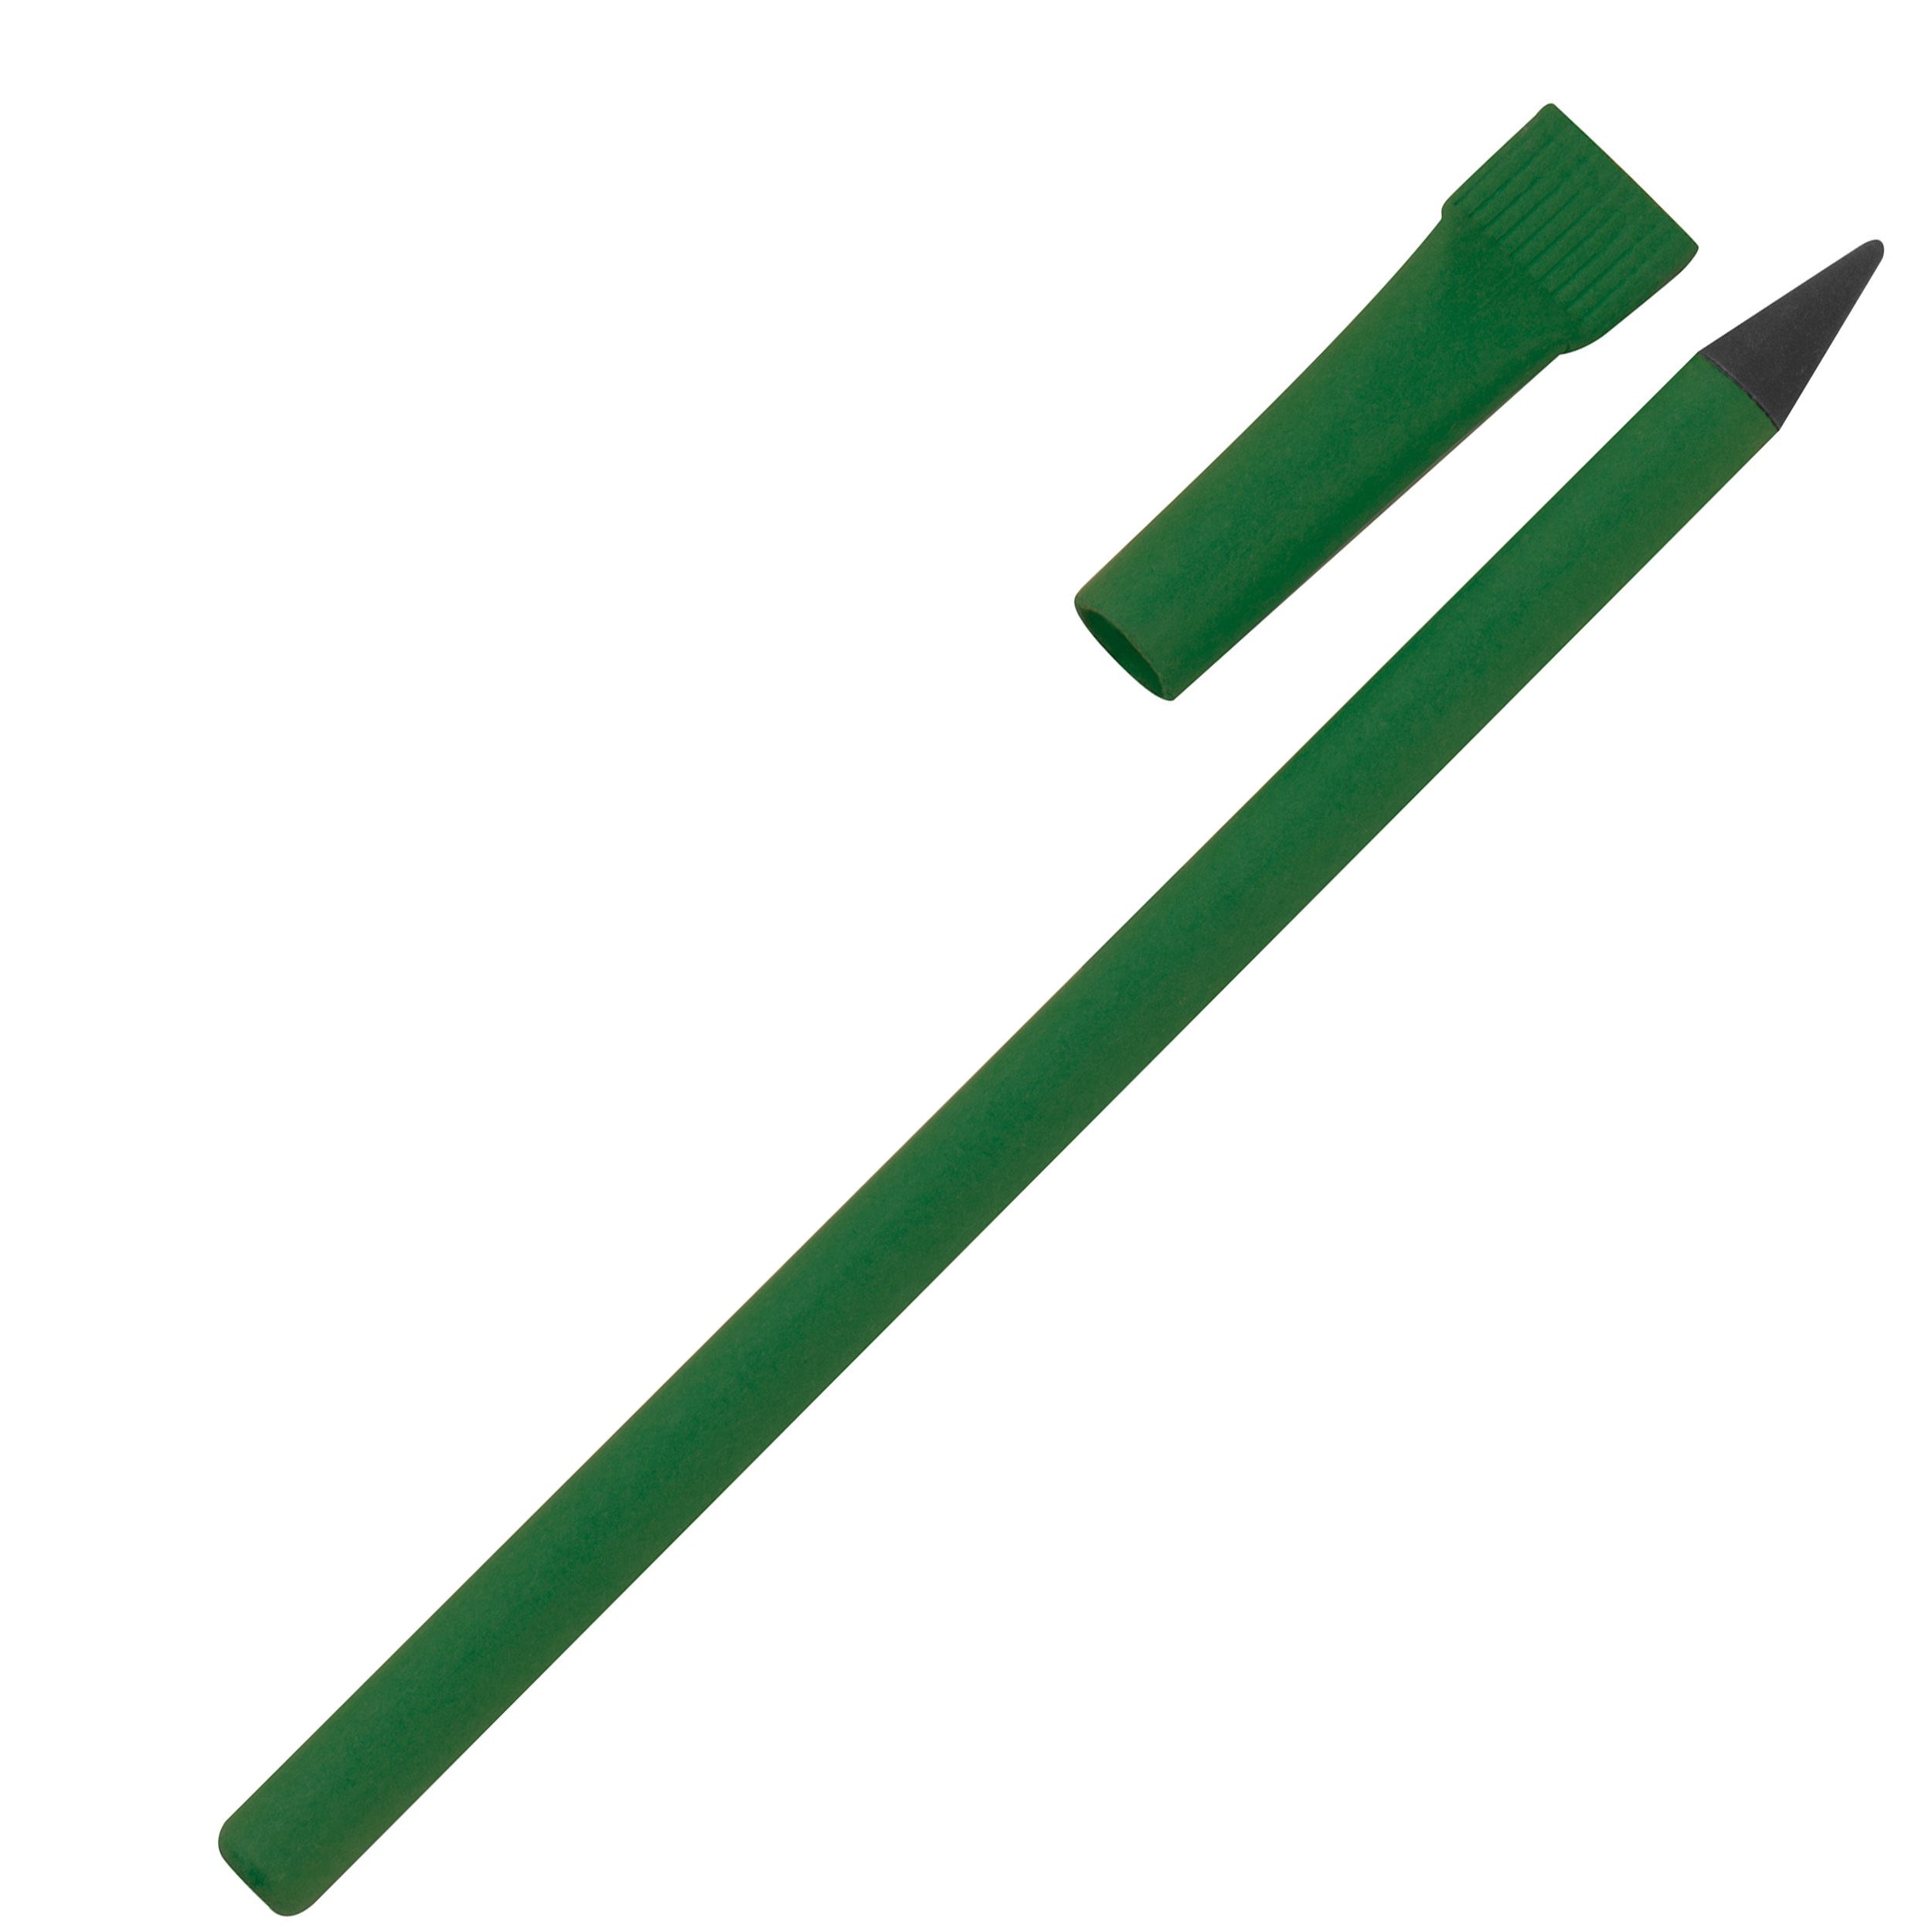 Tintenloses Schreibgerät aus Papier, grün